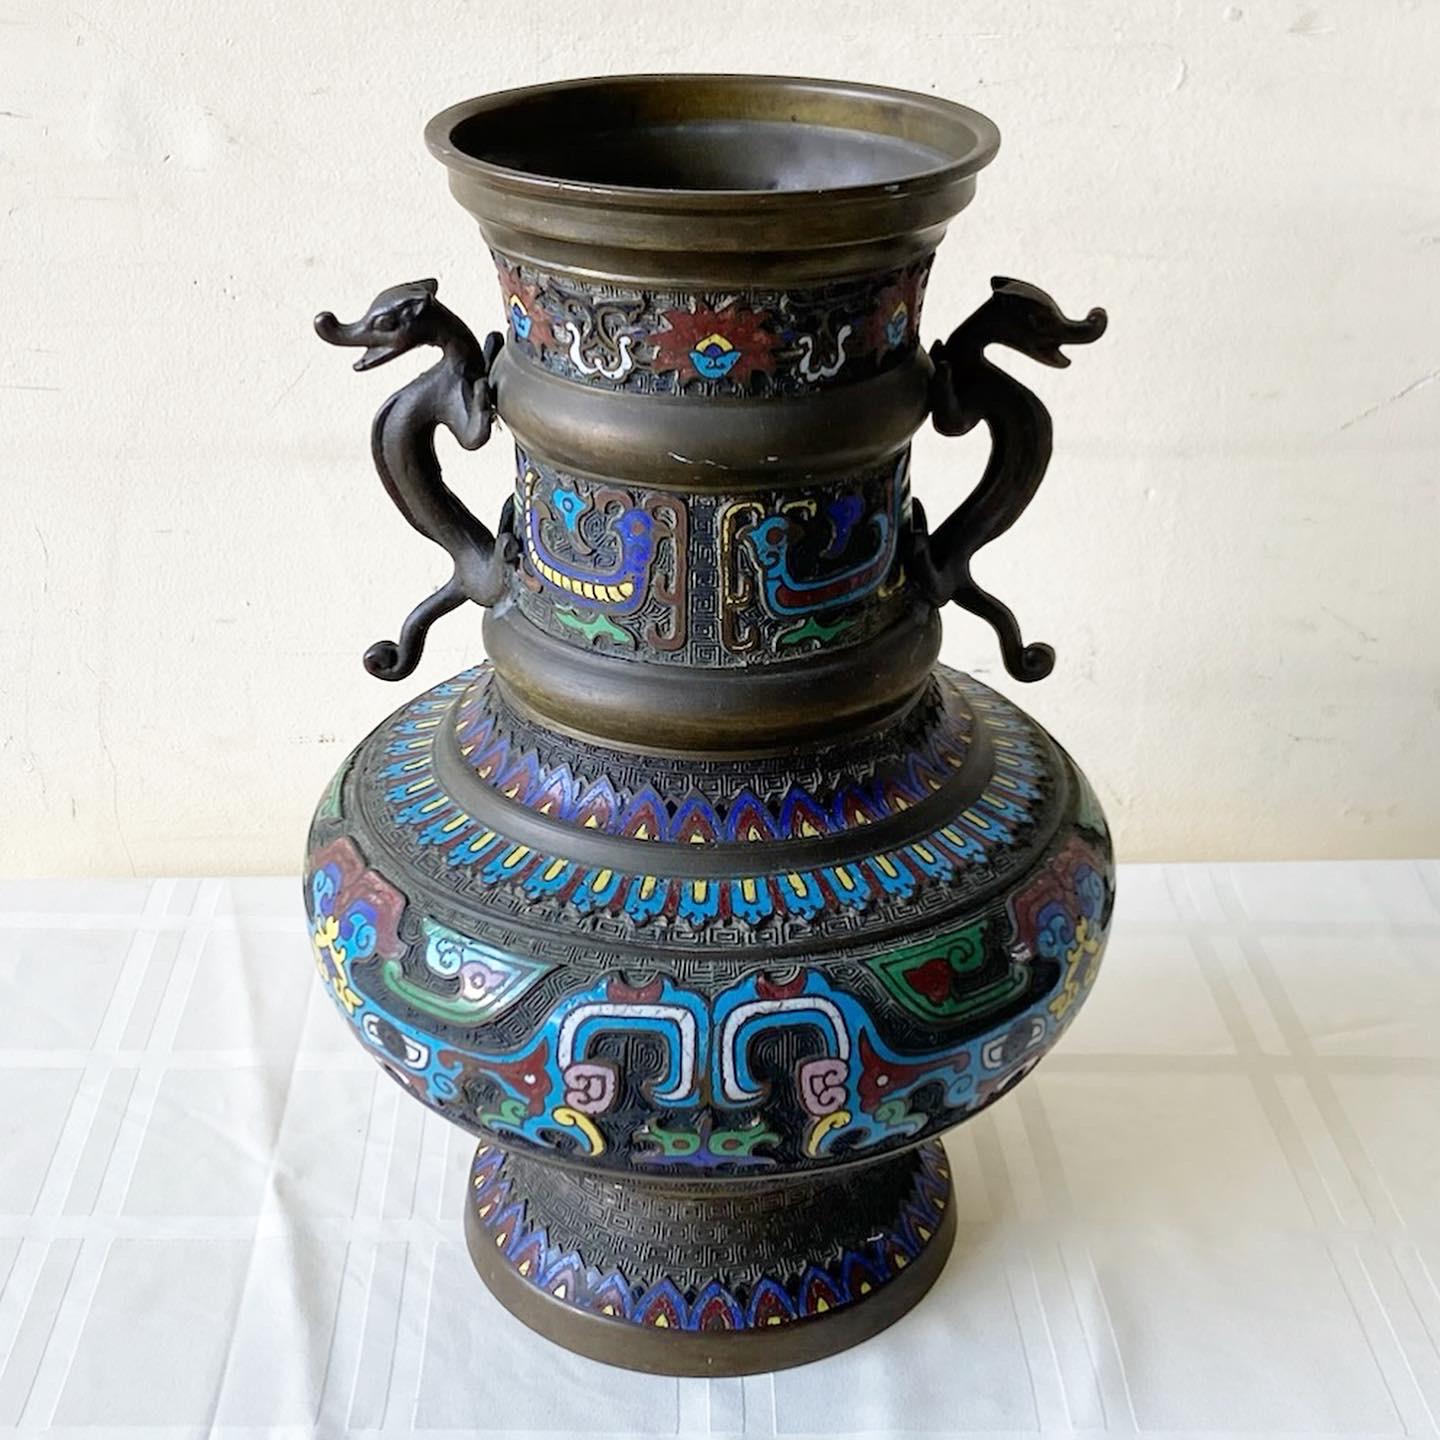 Exceptionnel chanfrein en laiton japonais du début du 20e siècle. Le vase est orné de motifs décoratifs émaillés.
